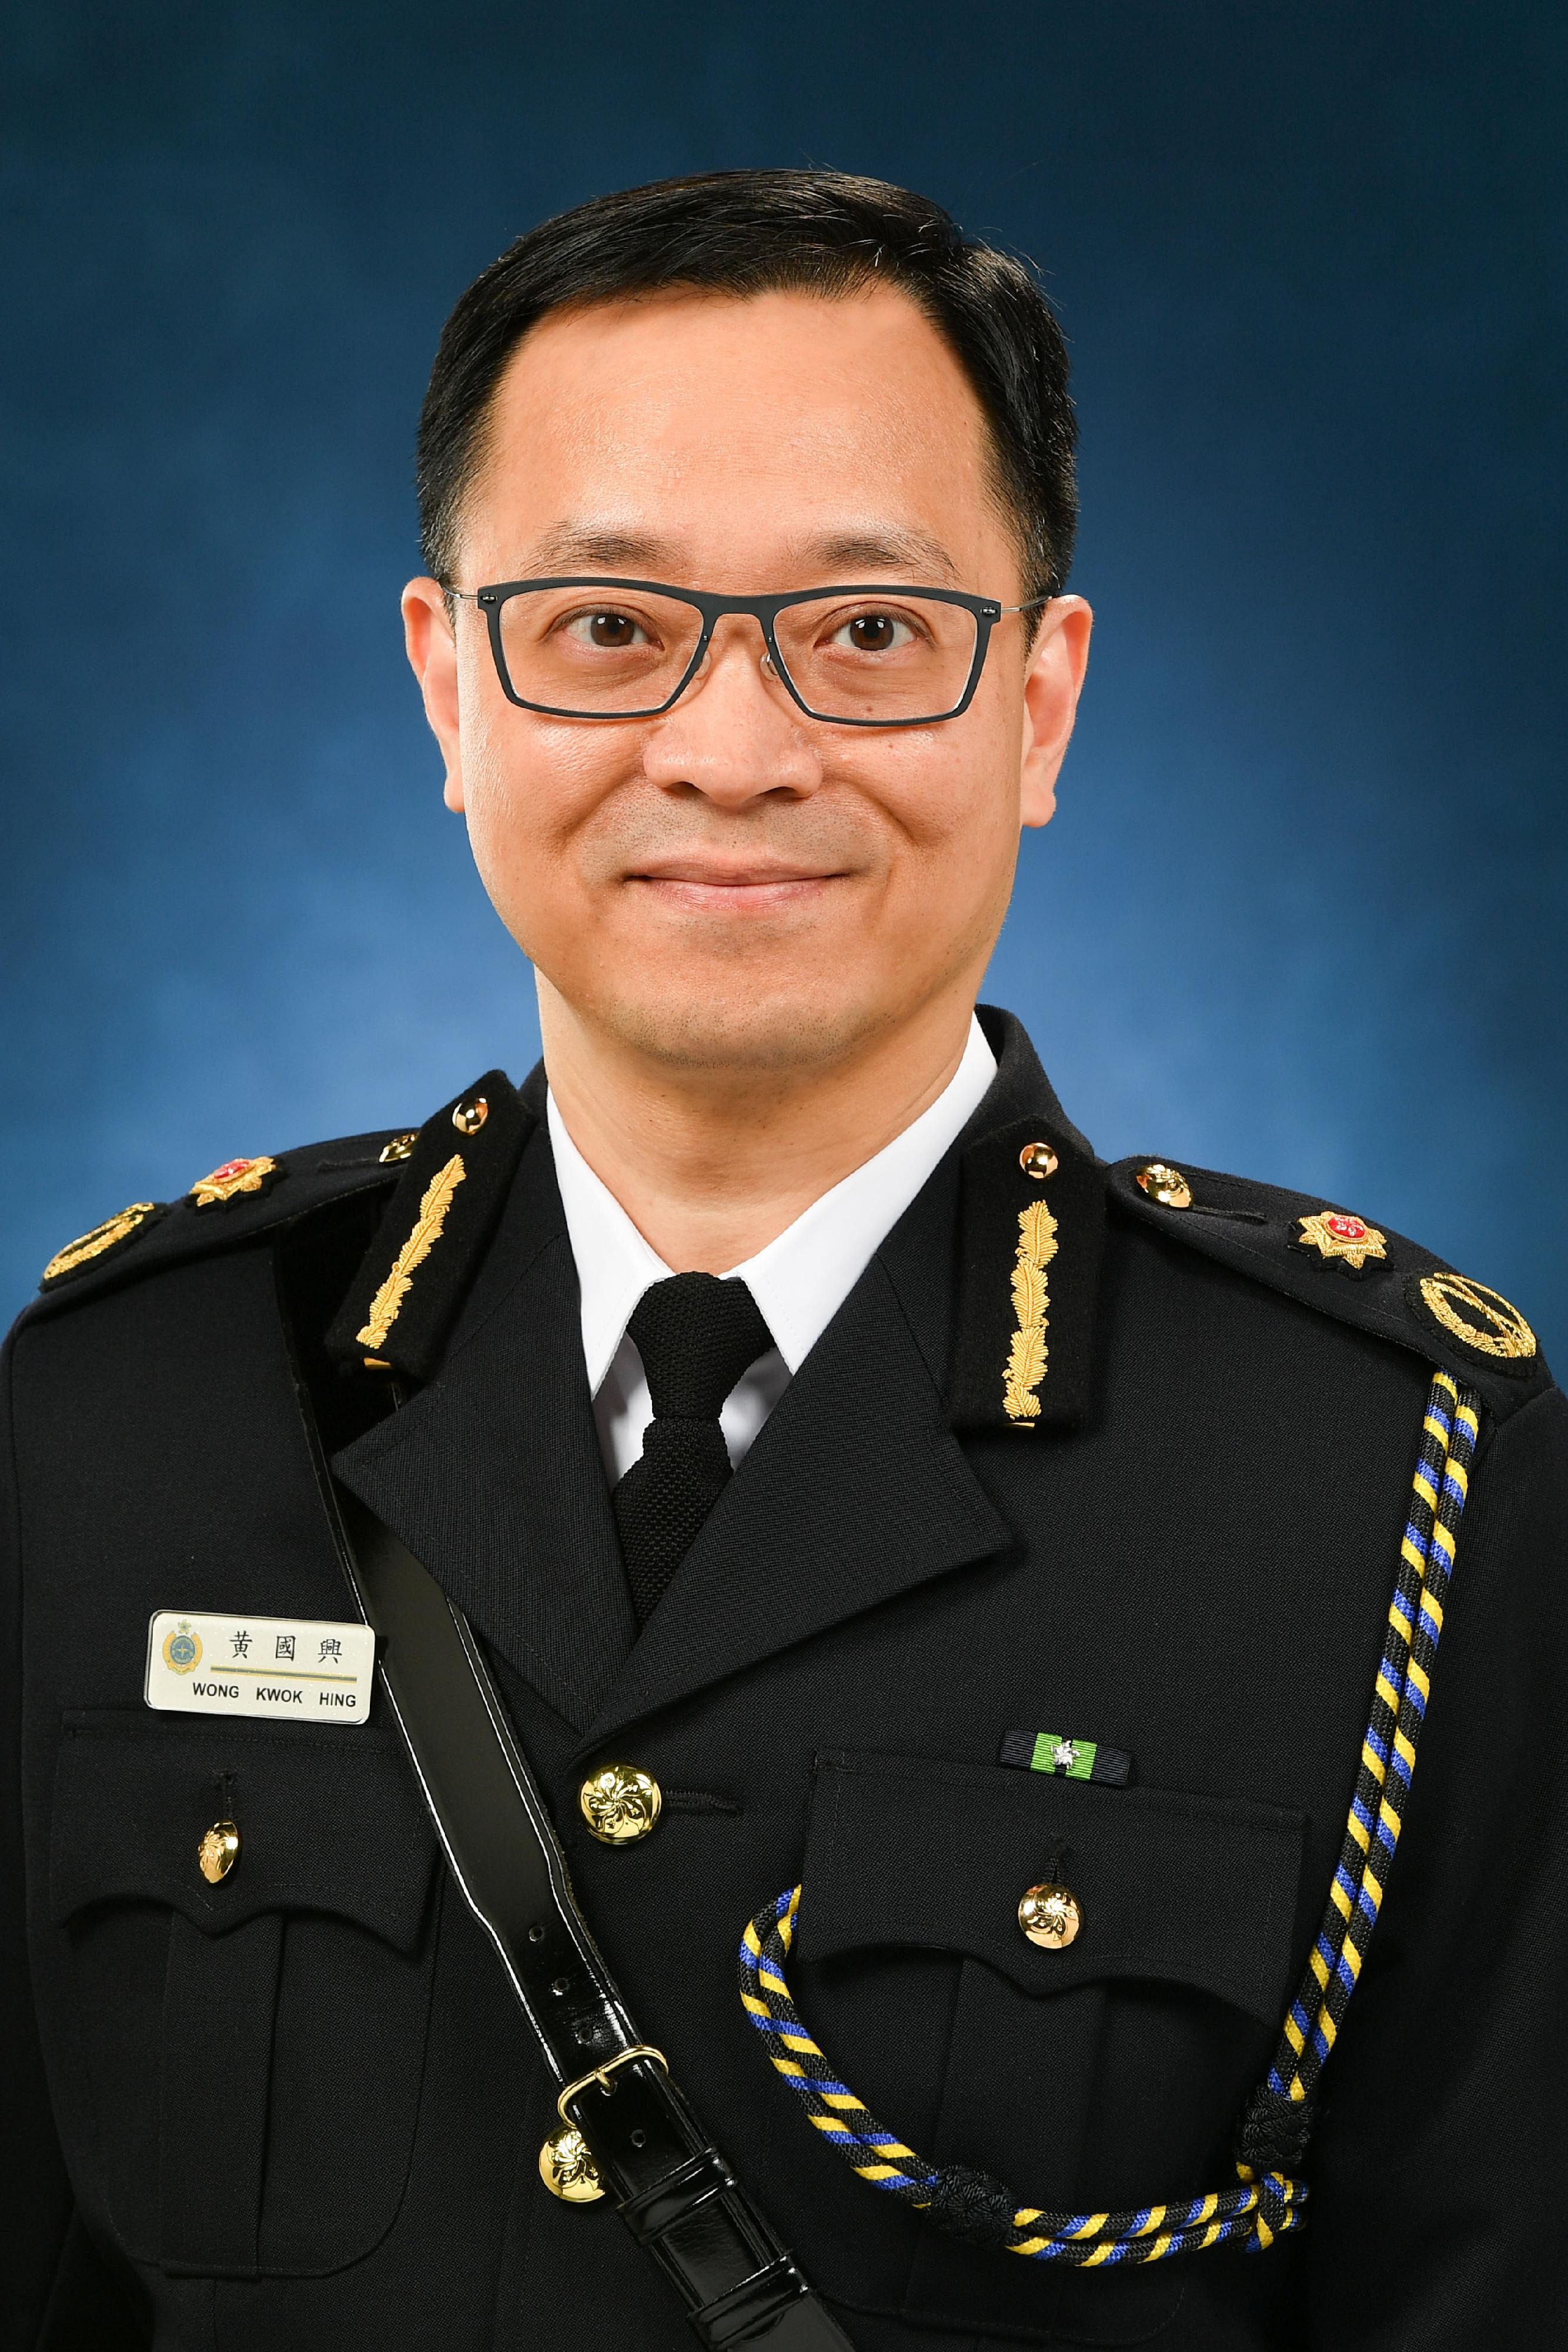 懲教署副署長黃國興將於二○二二年三月二十四日出任懲教署署長。